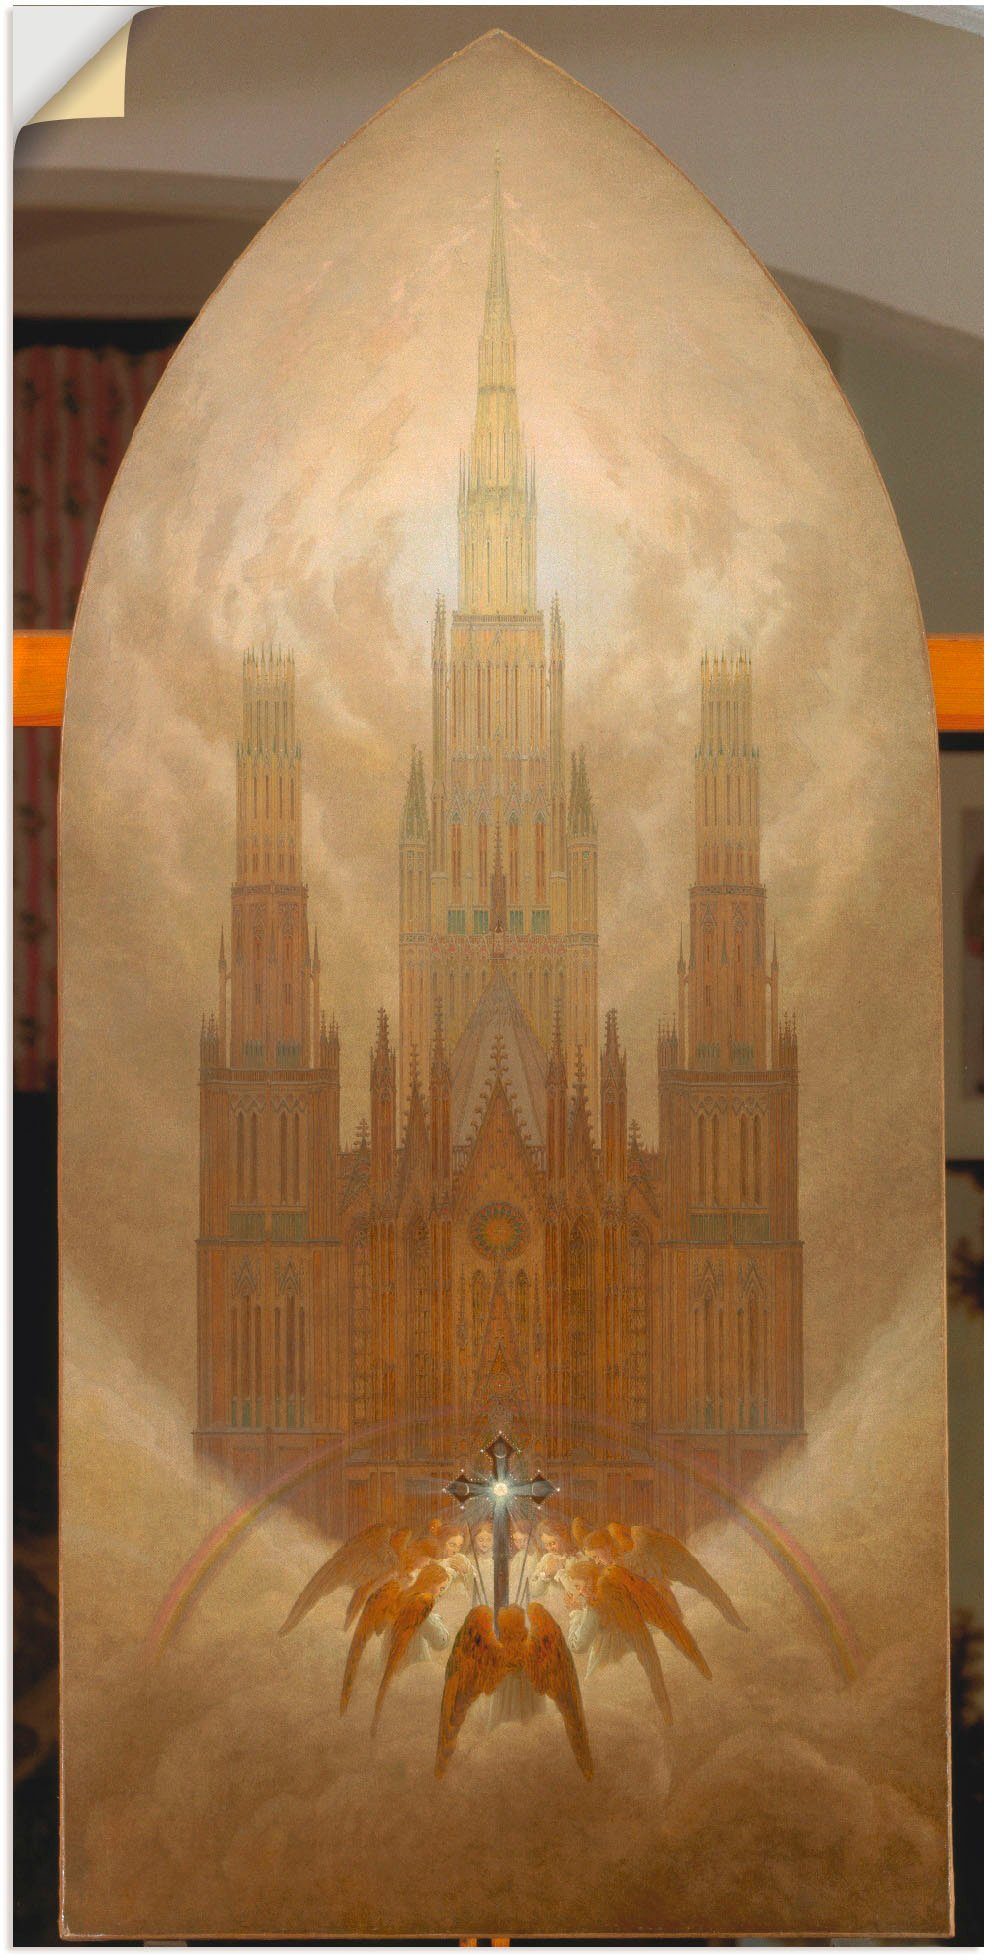 Artland Artprint De kathedraal. Ca. 1818. in vele afmetingen & productsoorten - artprint van aluminium / artprint voor buiten, artprint op linnen, poster, muursticker / wandfolie o